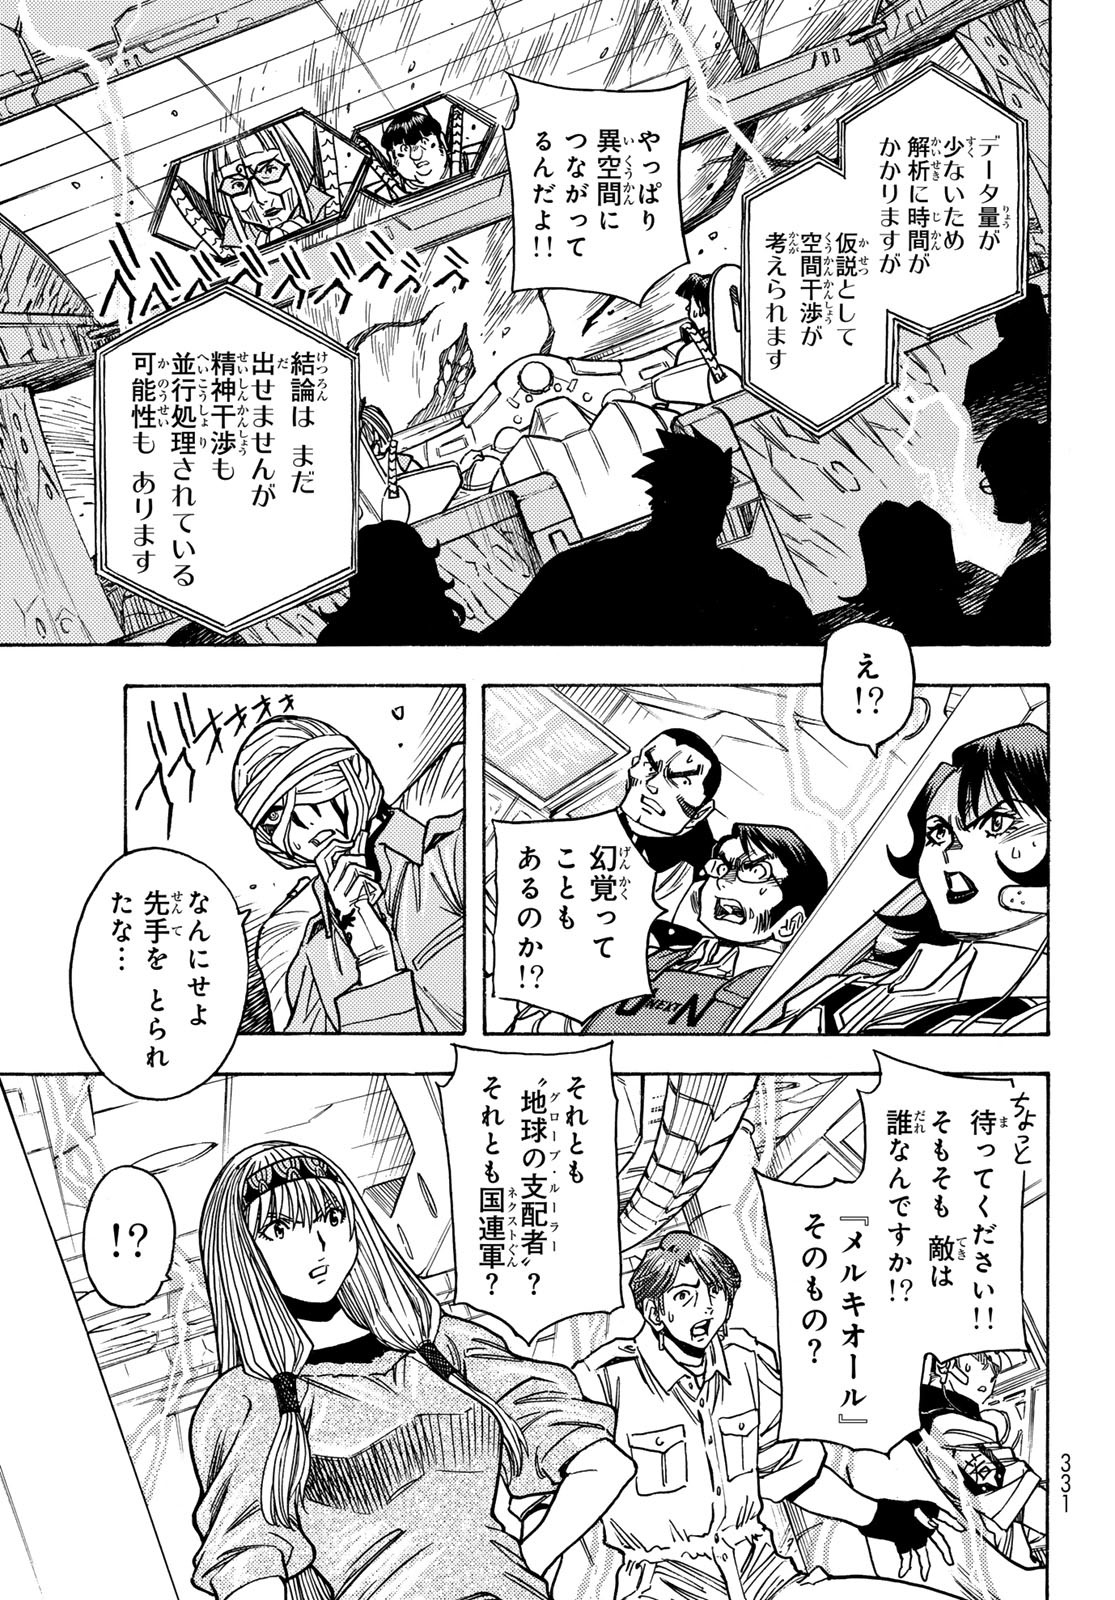 Mugou no Schnell Gear: Chikyuugai Kisouka AI - Chapter 50 - Page 5